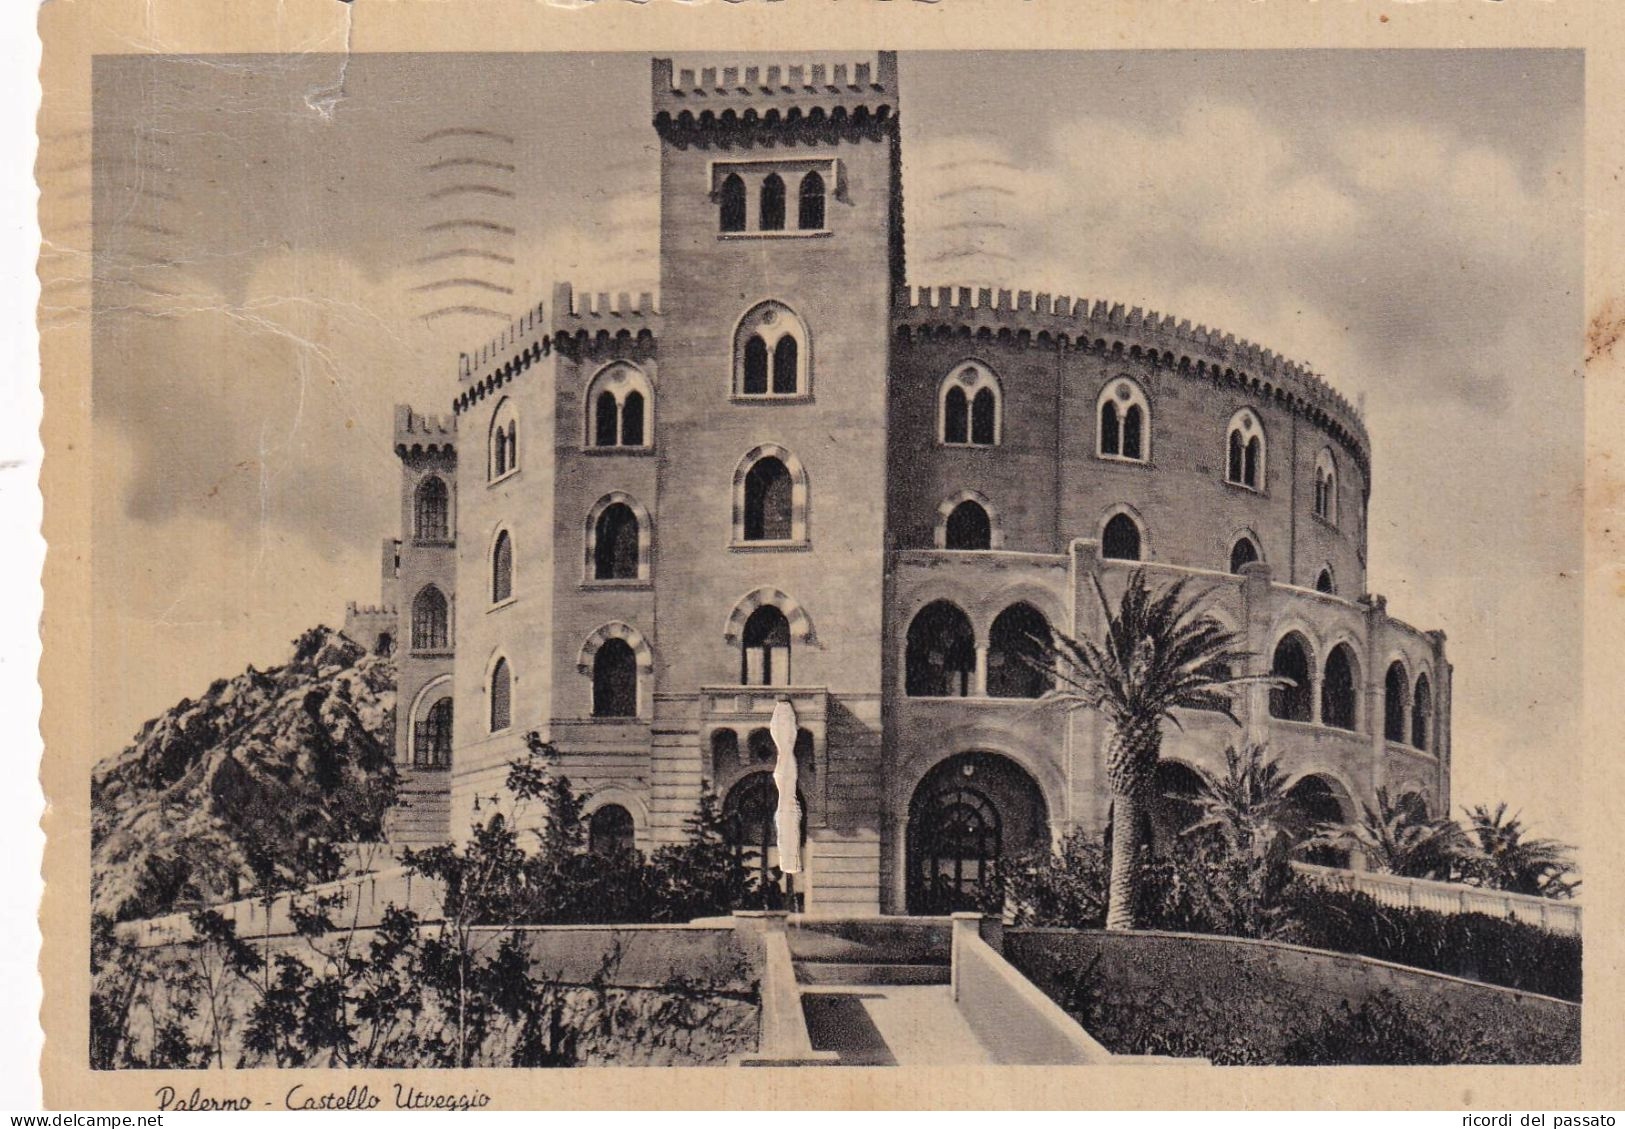 Cartolina Palermo - Castello Utveggio - Palermo